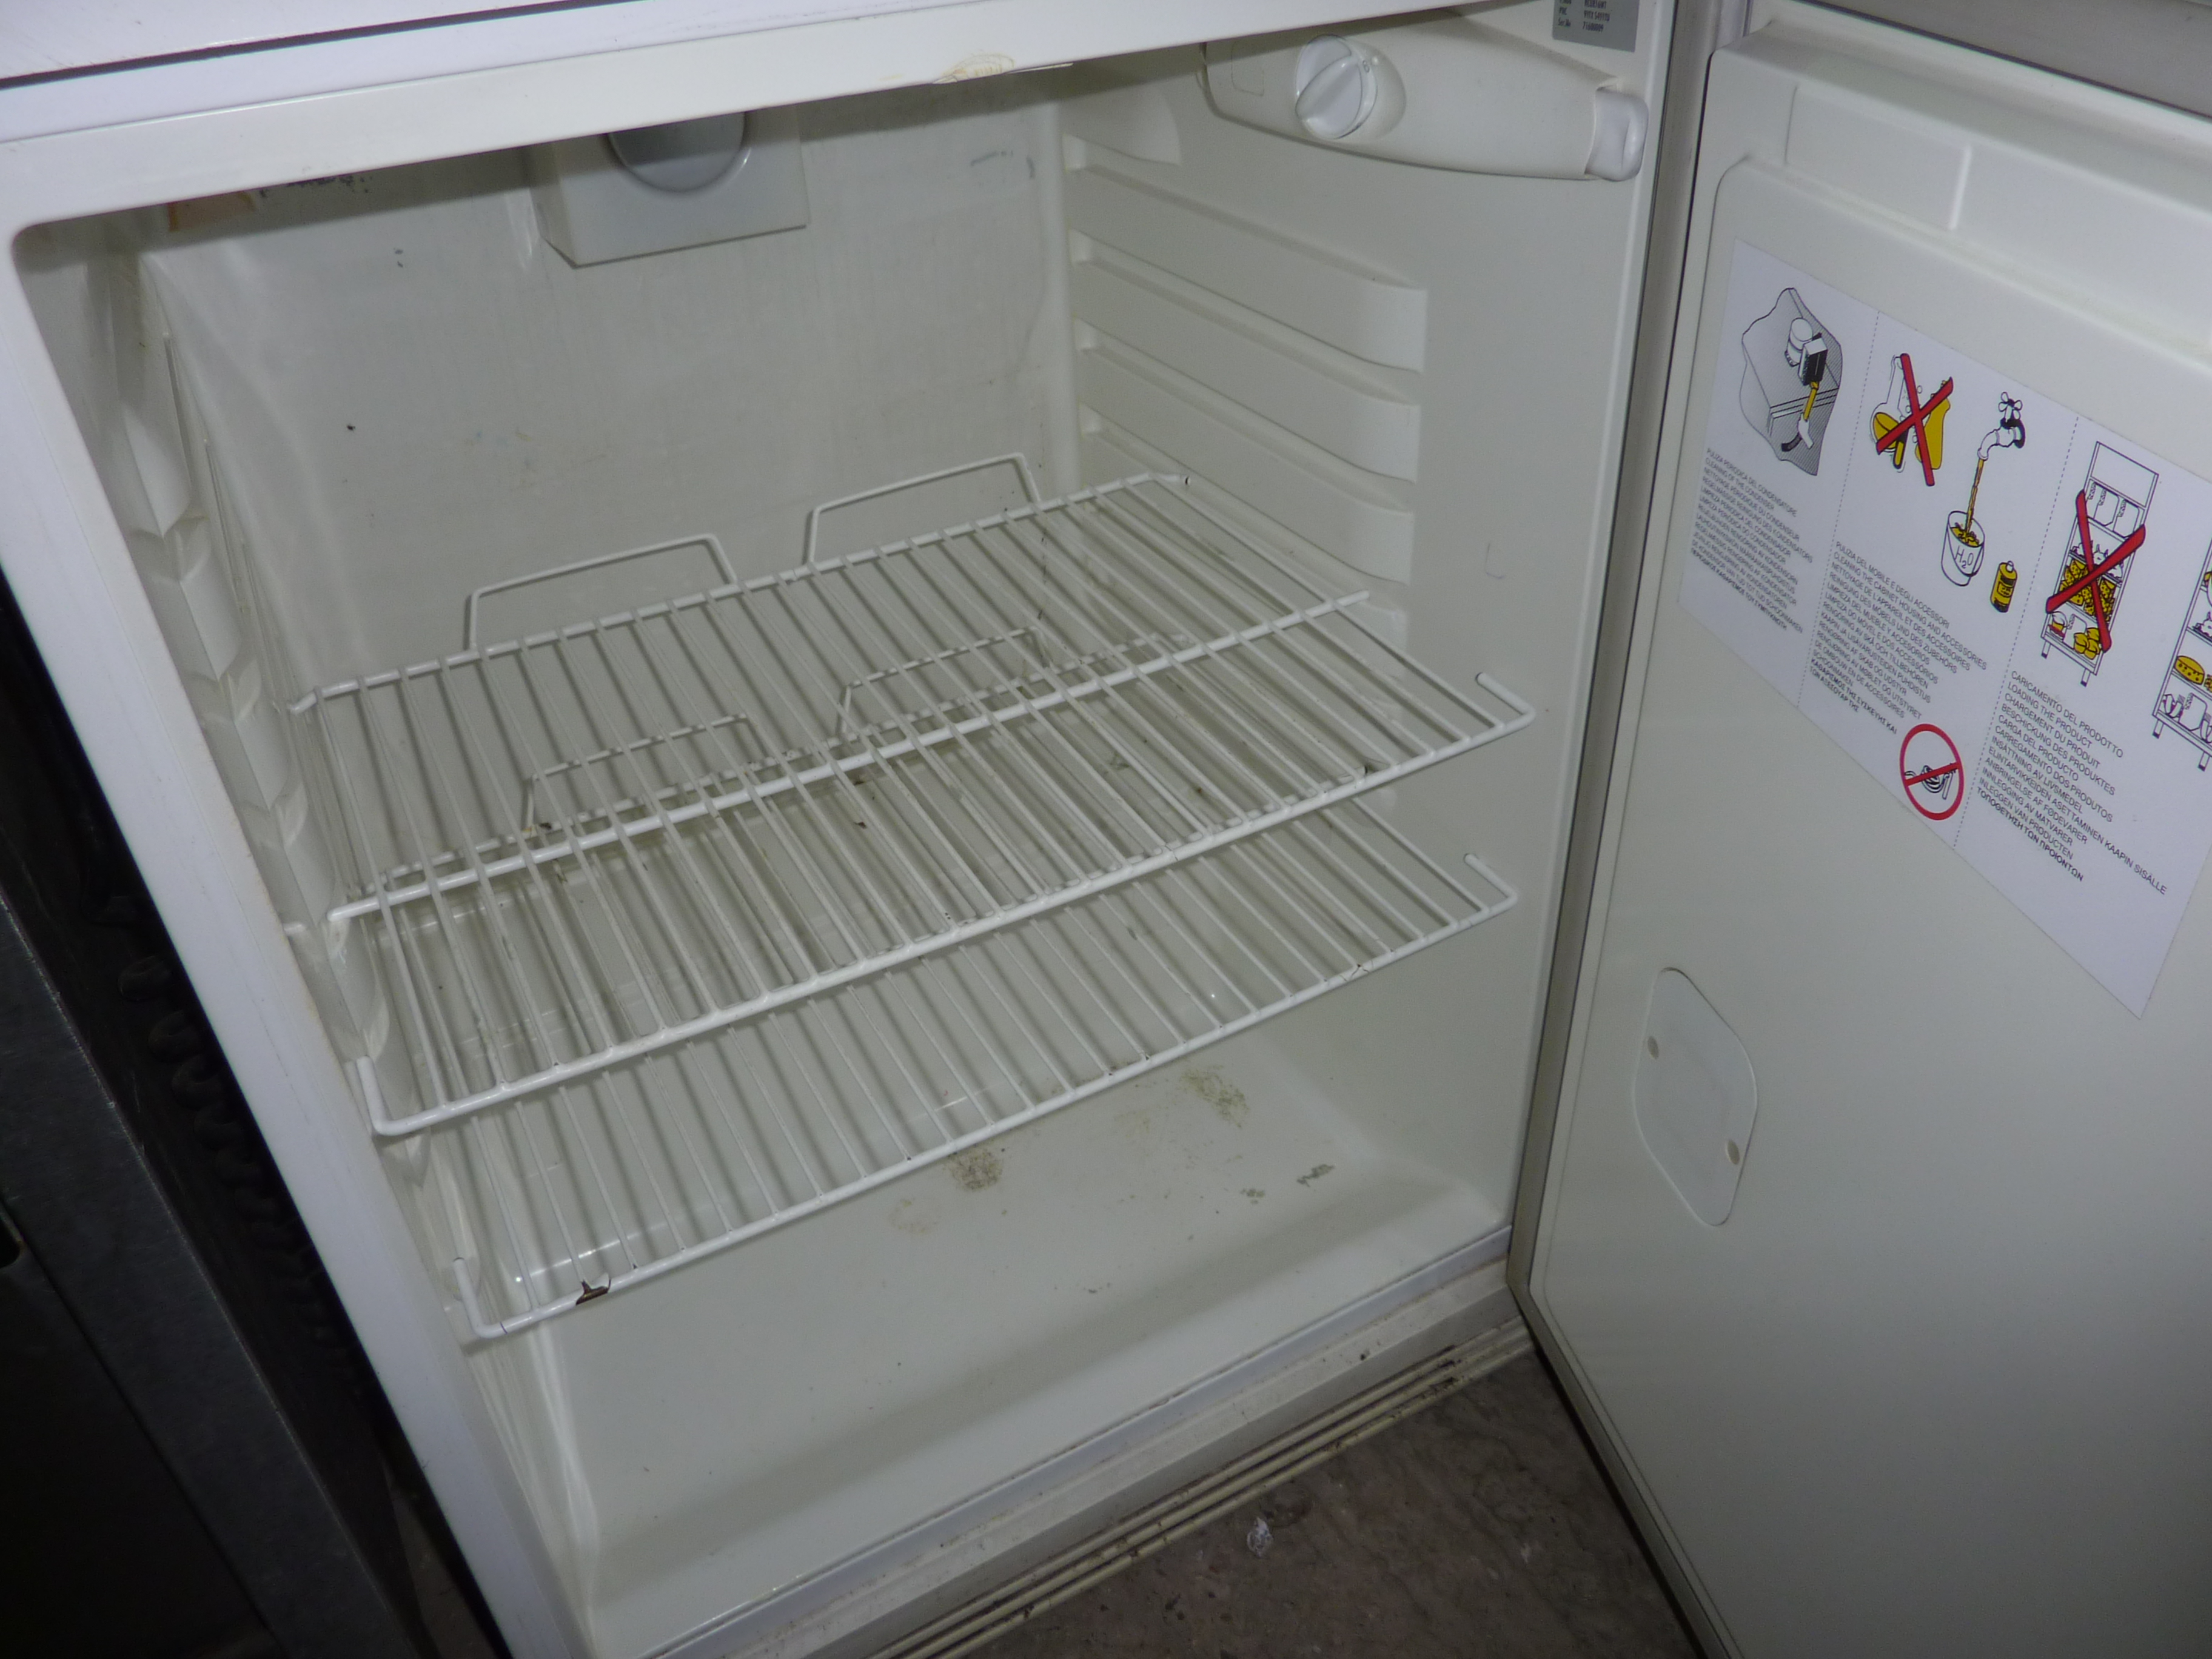 Electrolux under counter fridge - Image 2 of 2